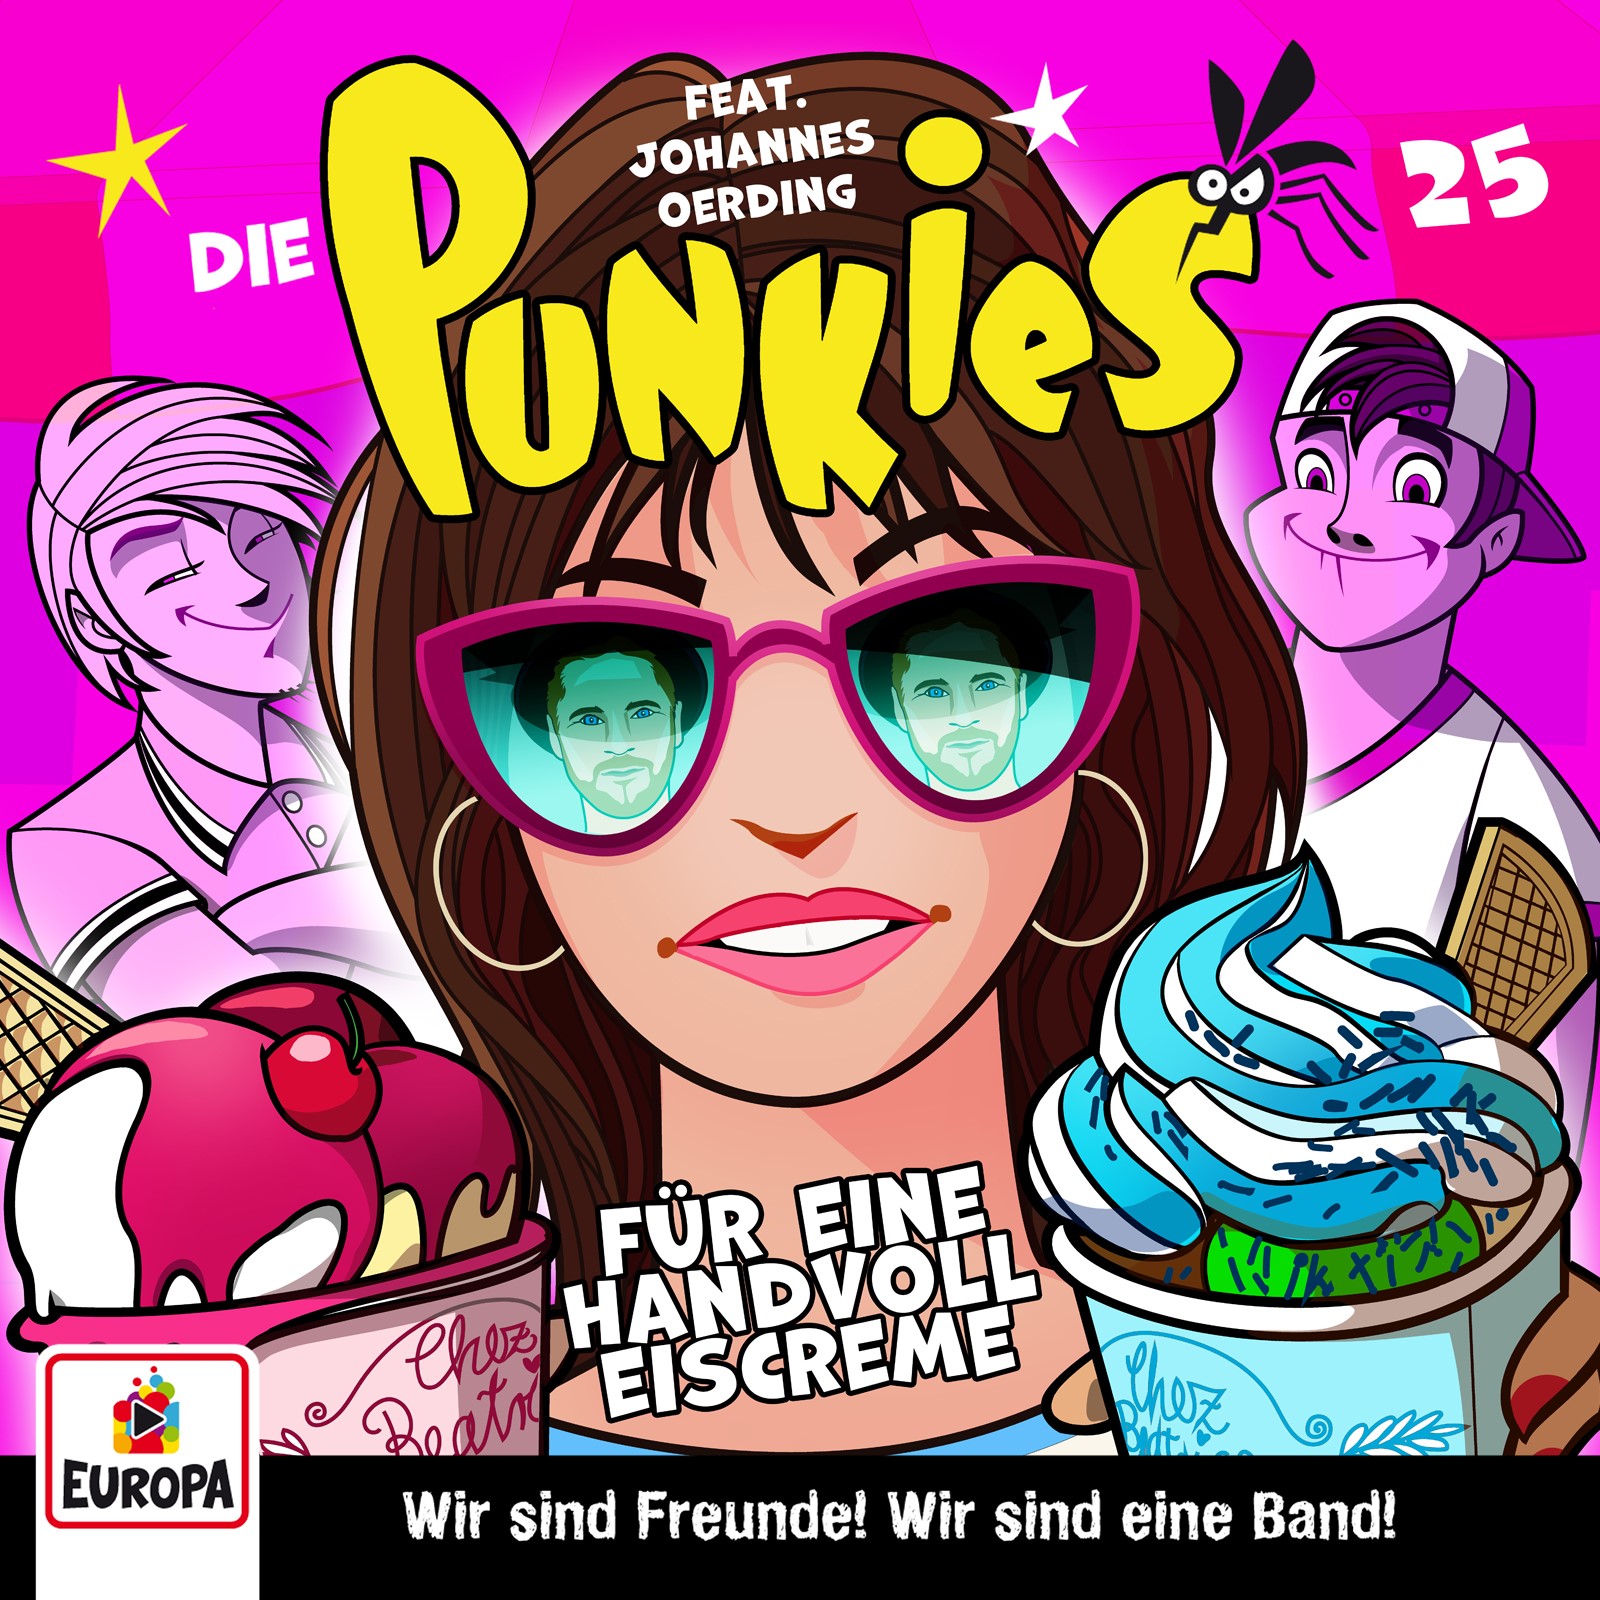 Die Punkies : Für eine Handvoll Eiscreme!